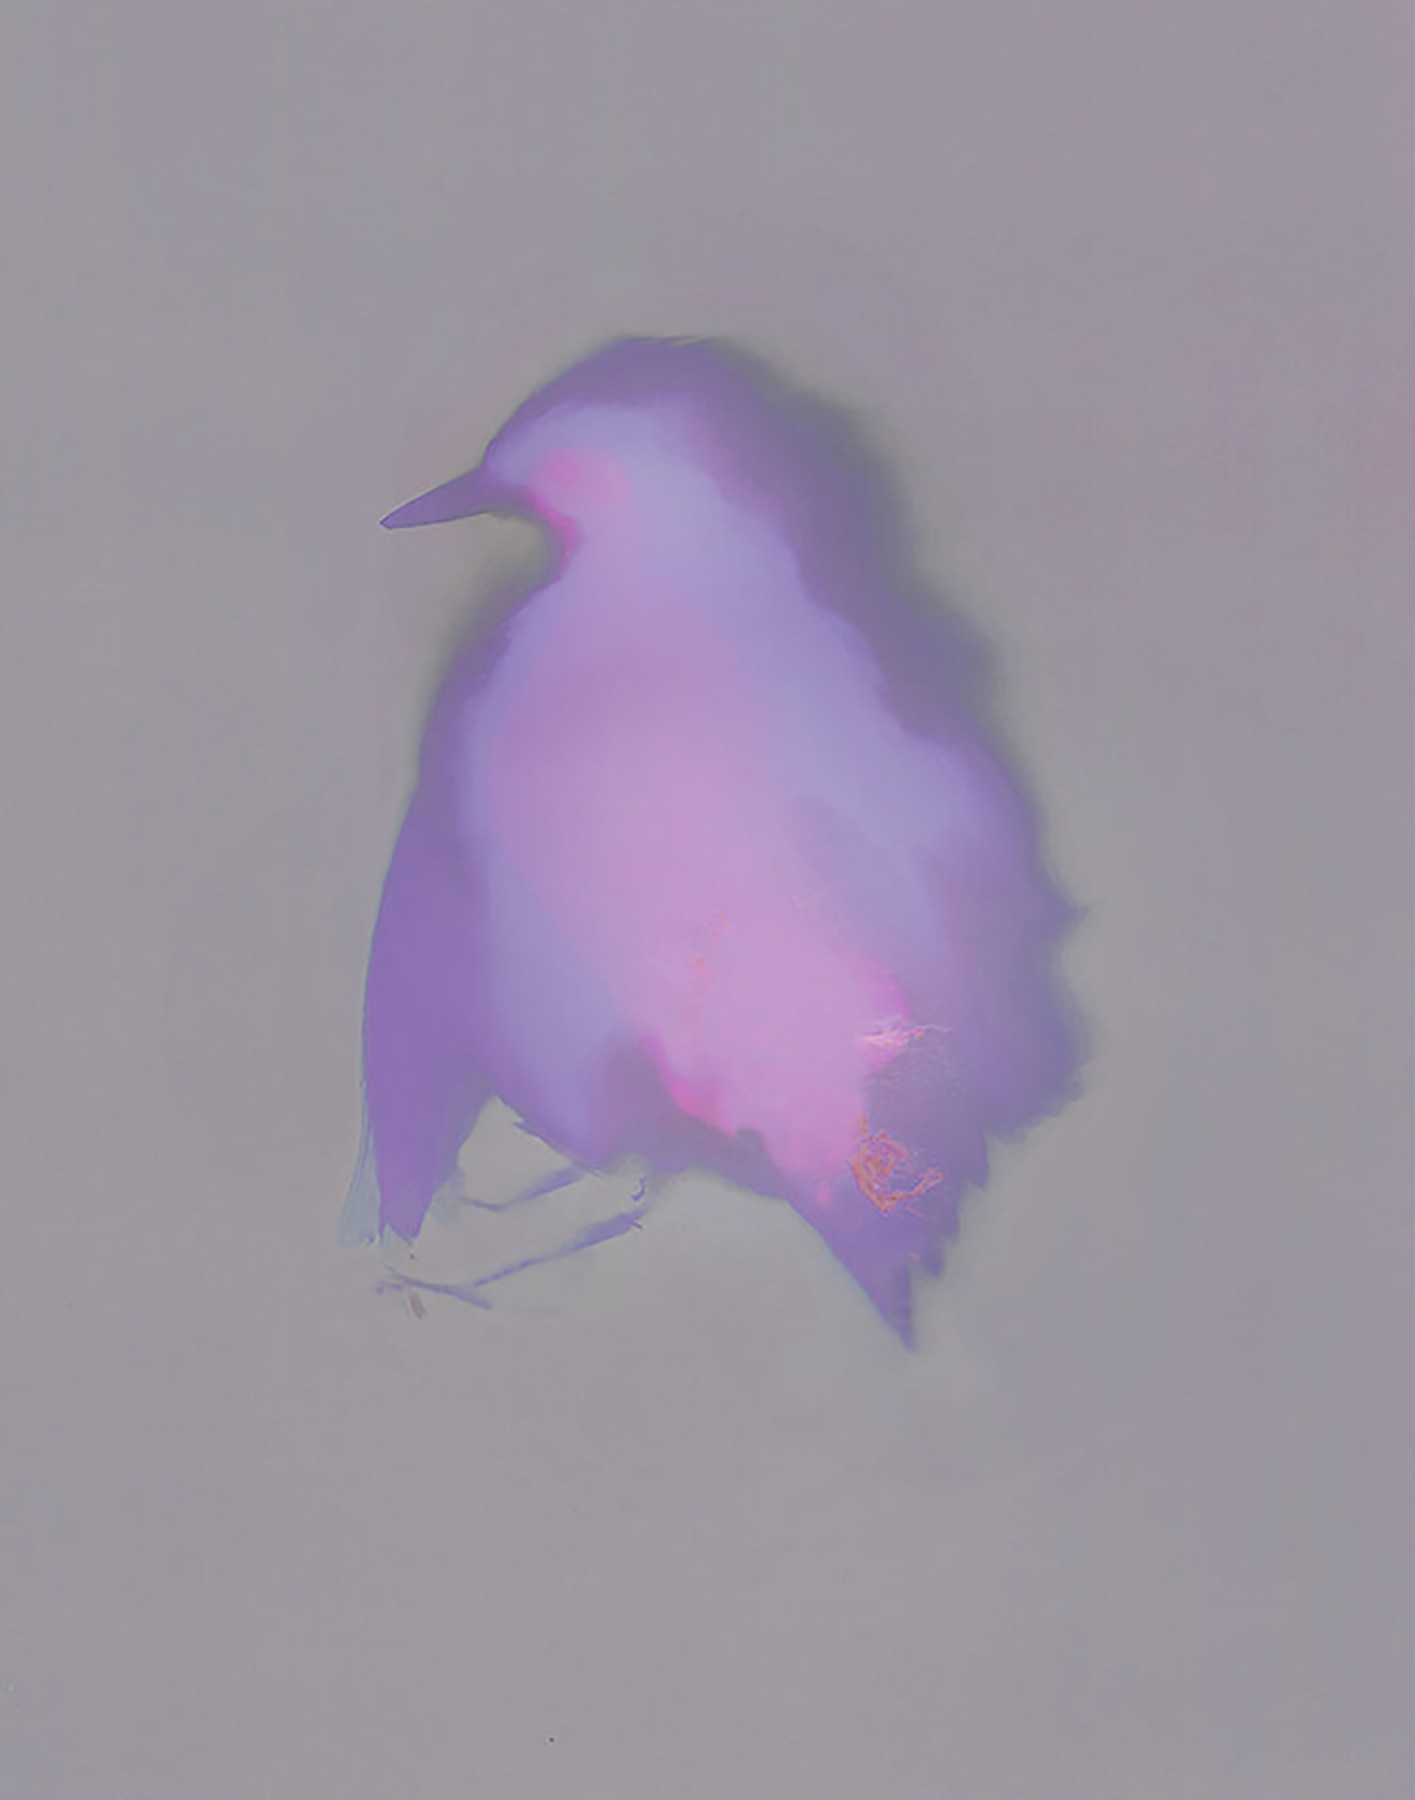 Fallen Bird 2, Virginia Carr, 2020, 7in x 5in, $300